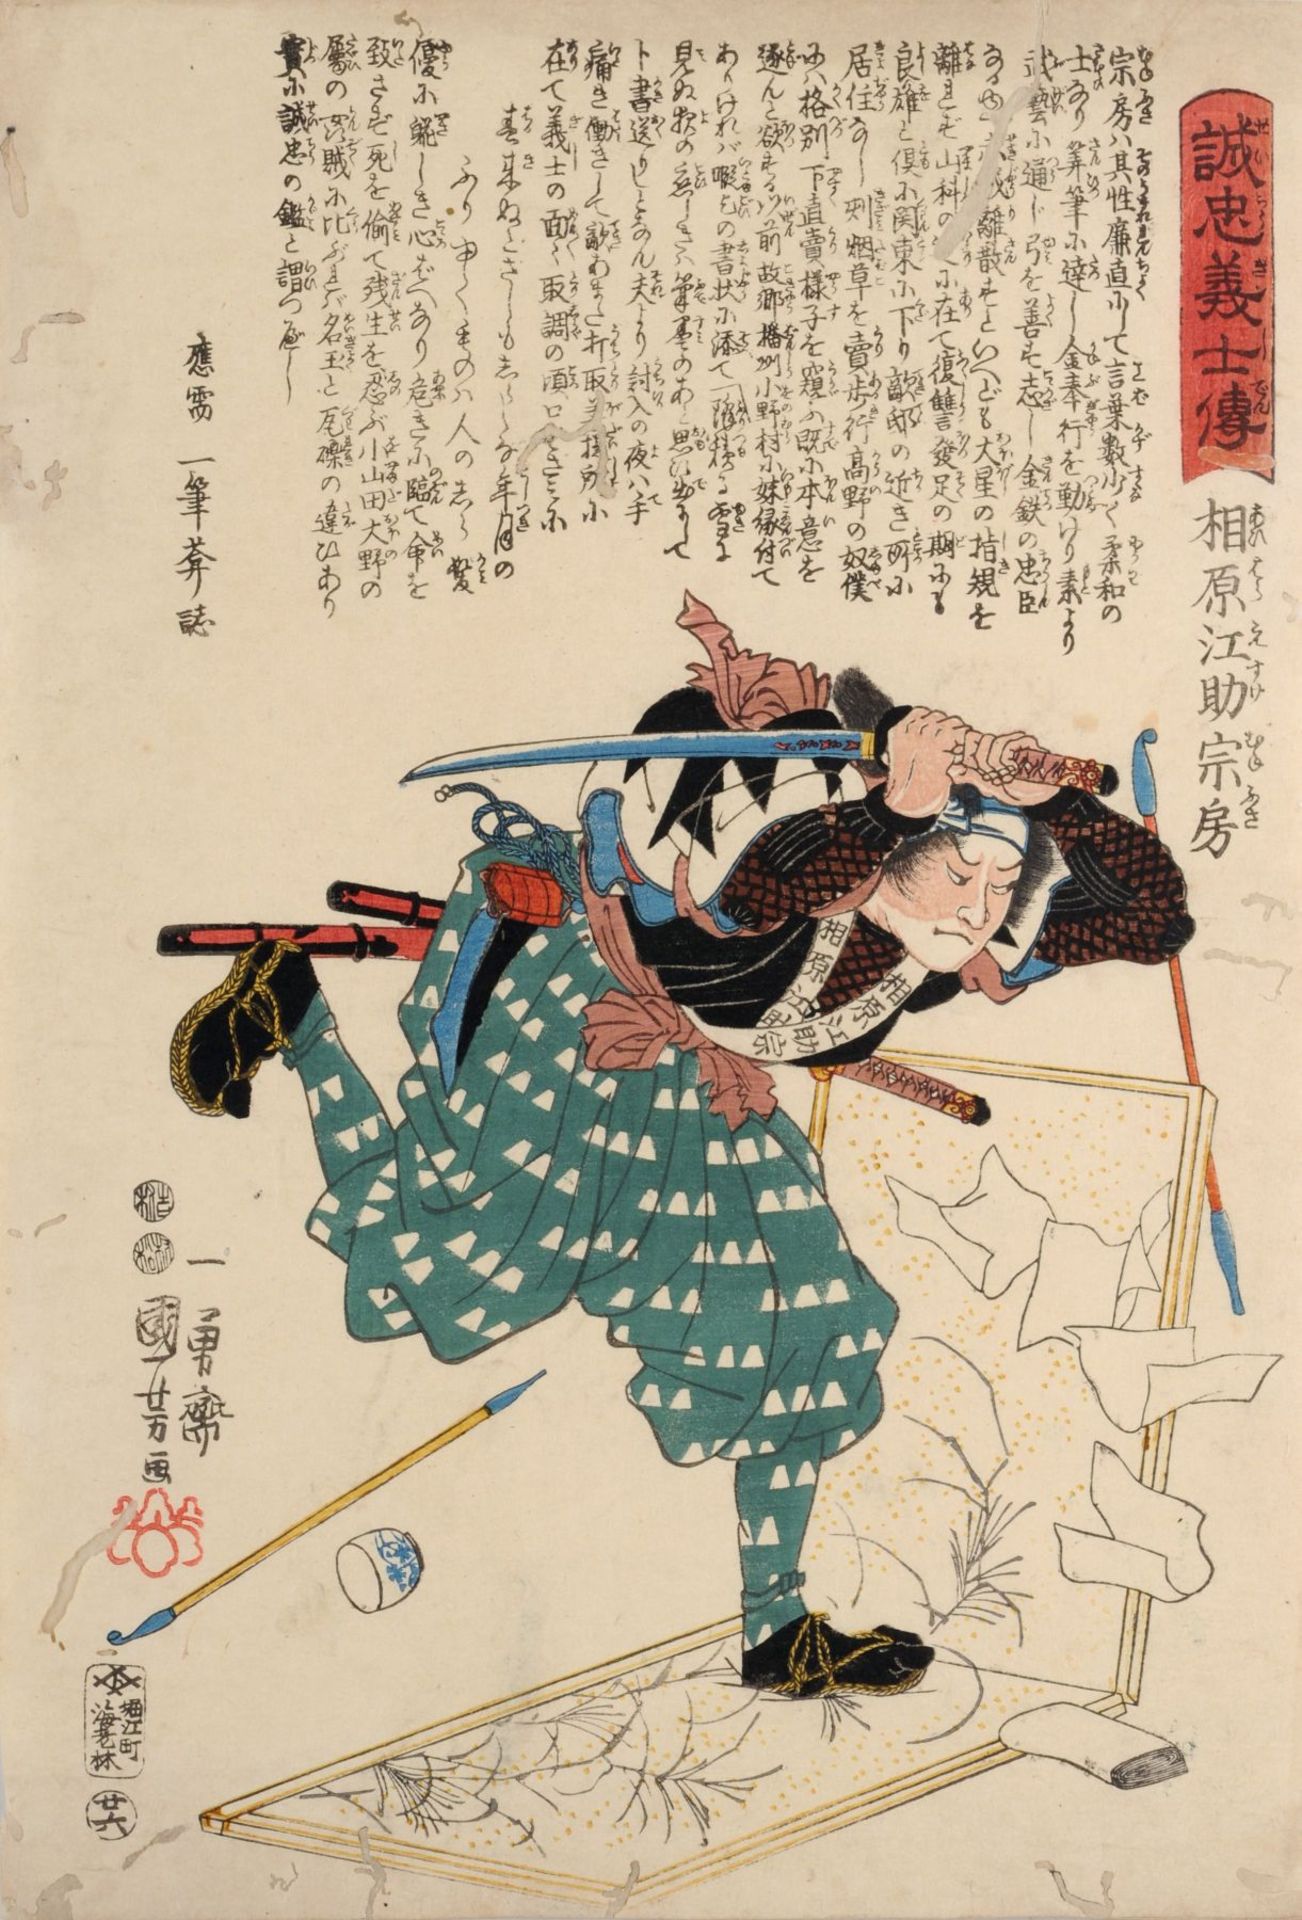 Kuniyoshi Utagawa "Aihara Esuke Munefusa" (Samurai, über eine Tafel laufend). 1847. Kuniyoshi